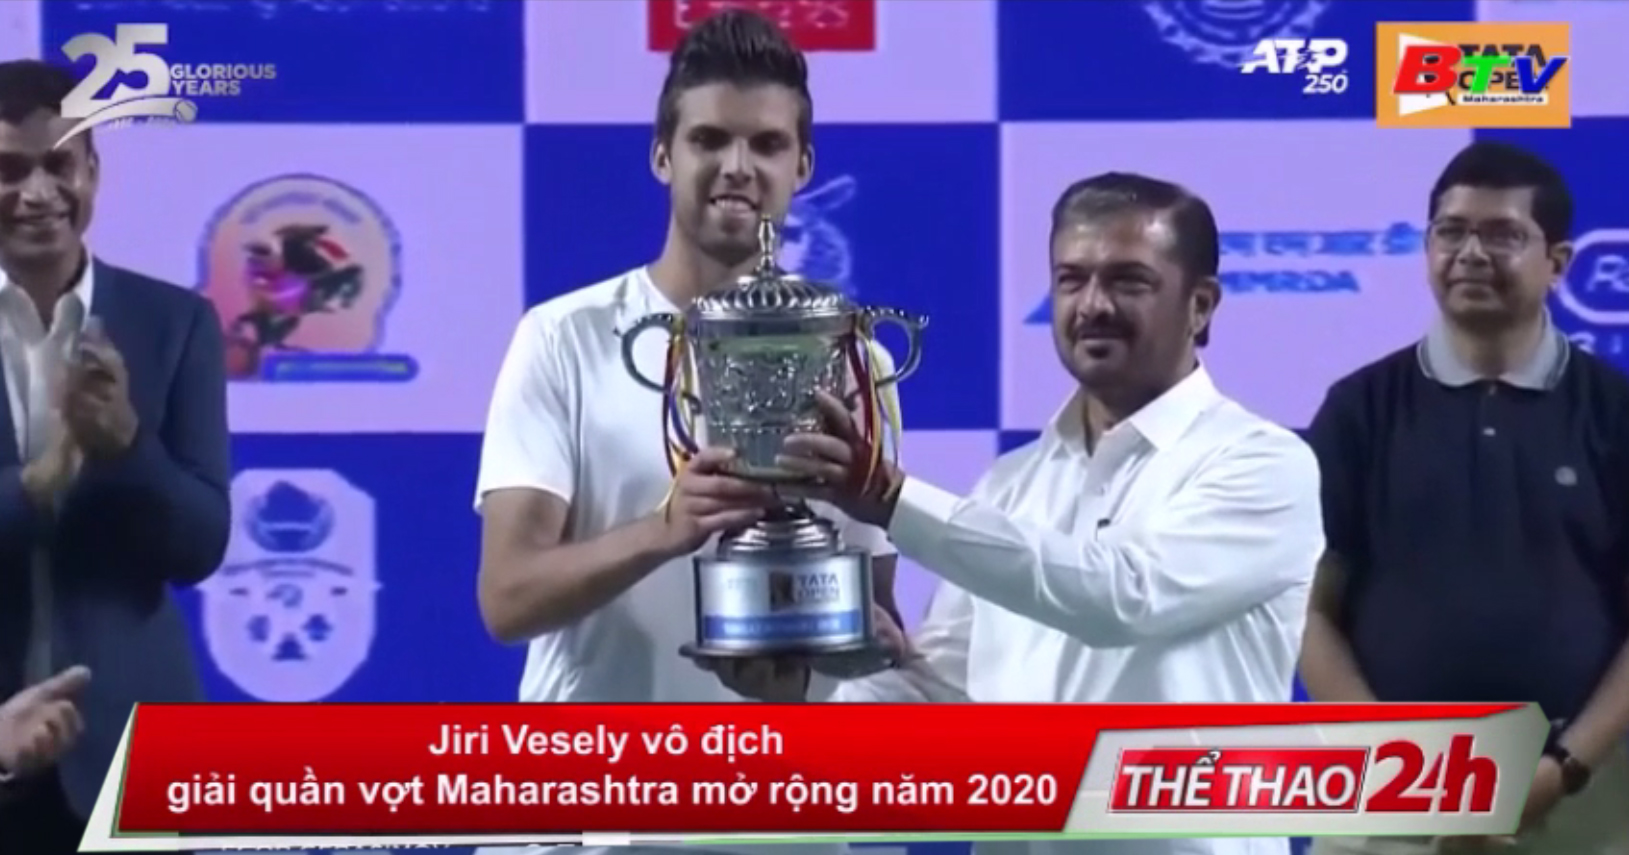 Jiri Vesely vô địch Giải quần vợt Maharashtra mở rộng năm 2020